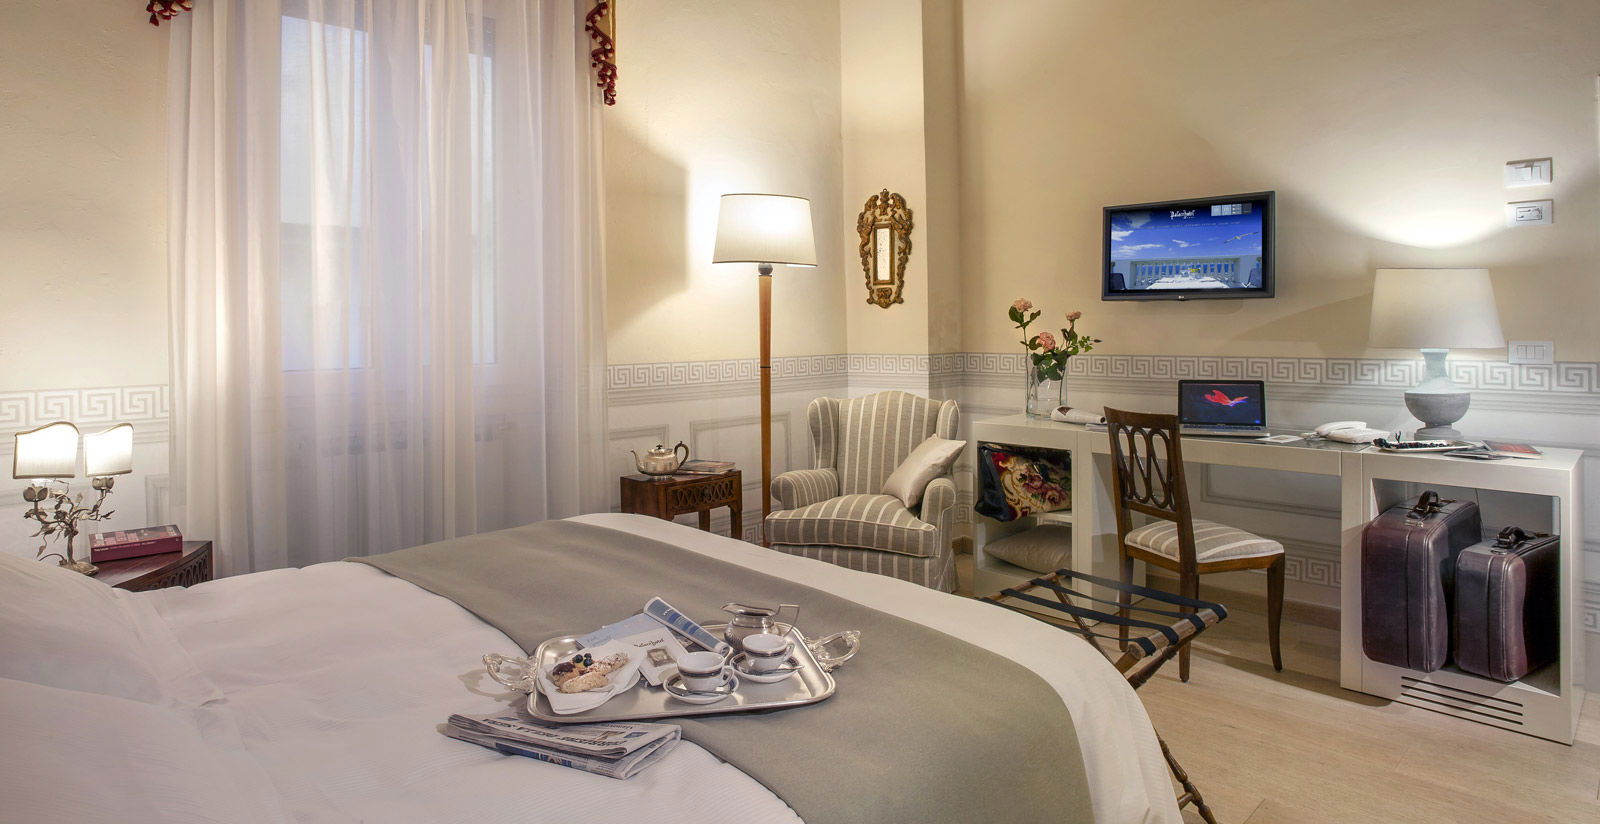 Viareggio hotel offers 4